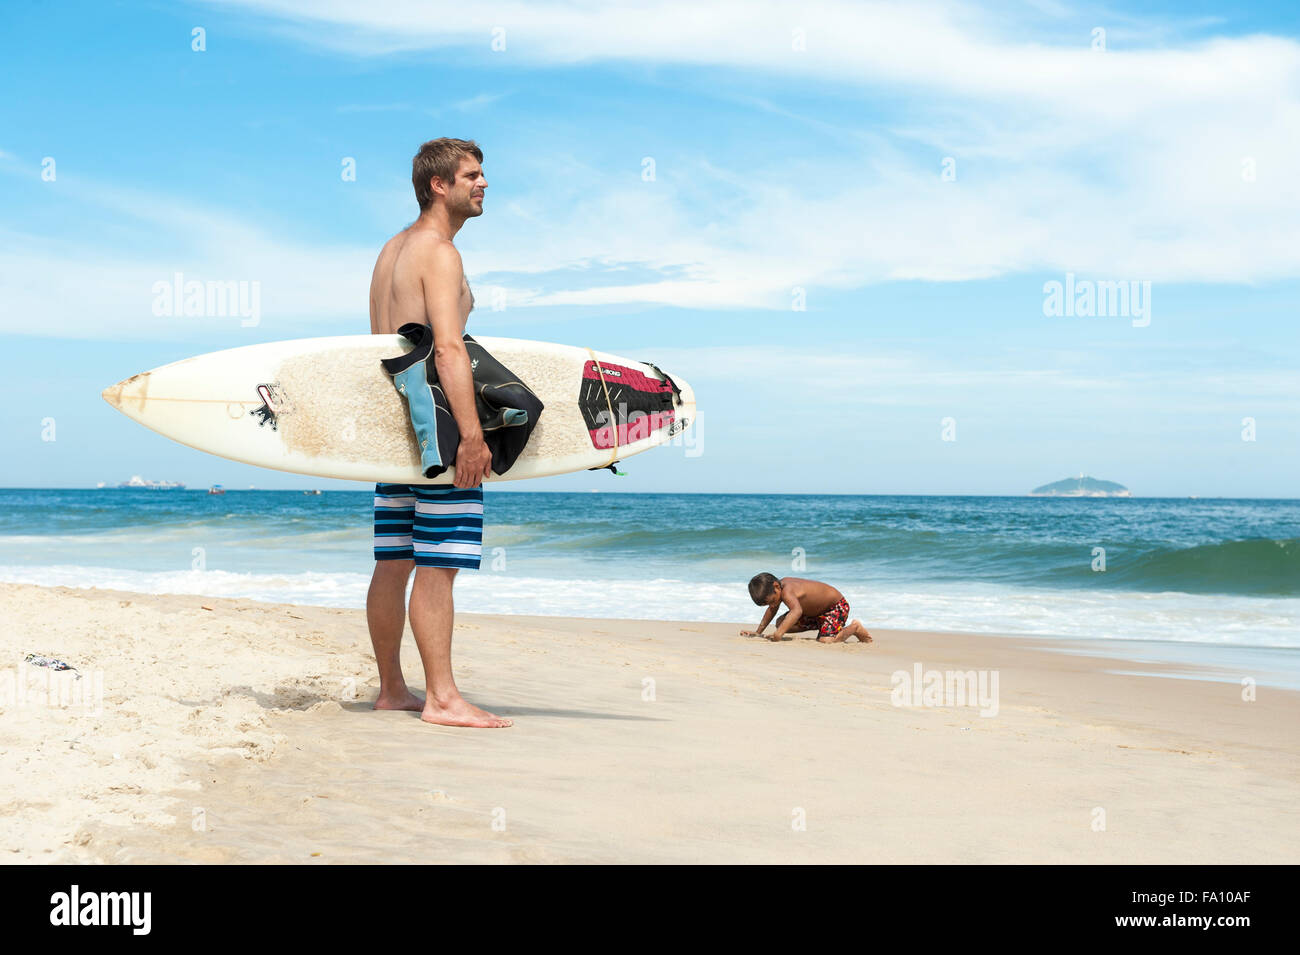 RIO DE JANEIRO, Brésil - 22 octobre 2015 : surfer brésilien se distingue avec des conditions de surf à la plage d'Ipanema à sur. Banque D'Images